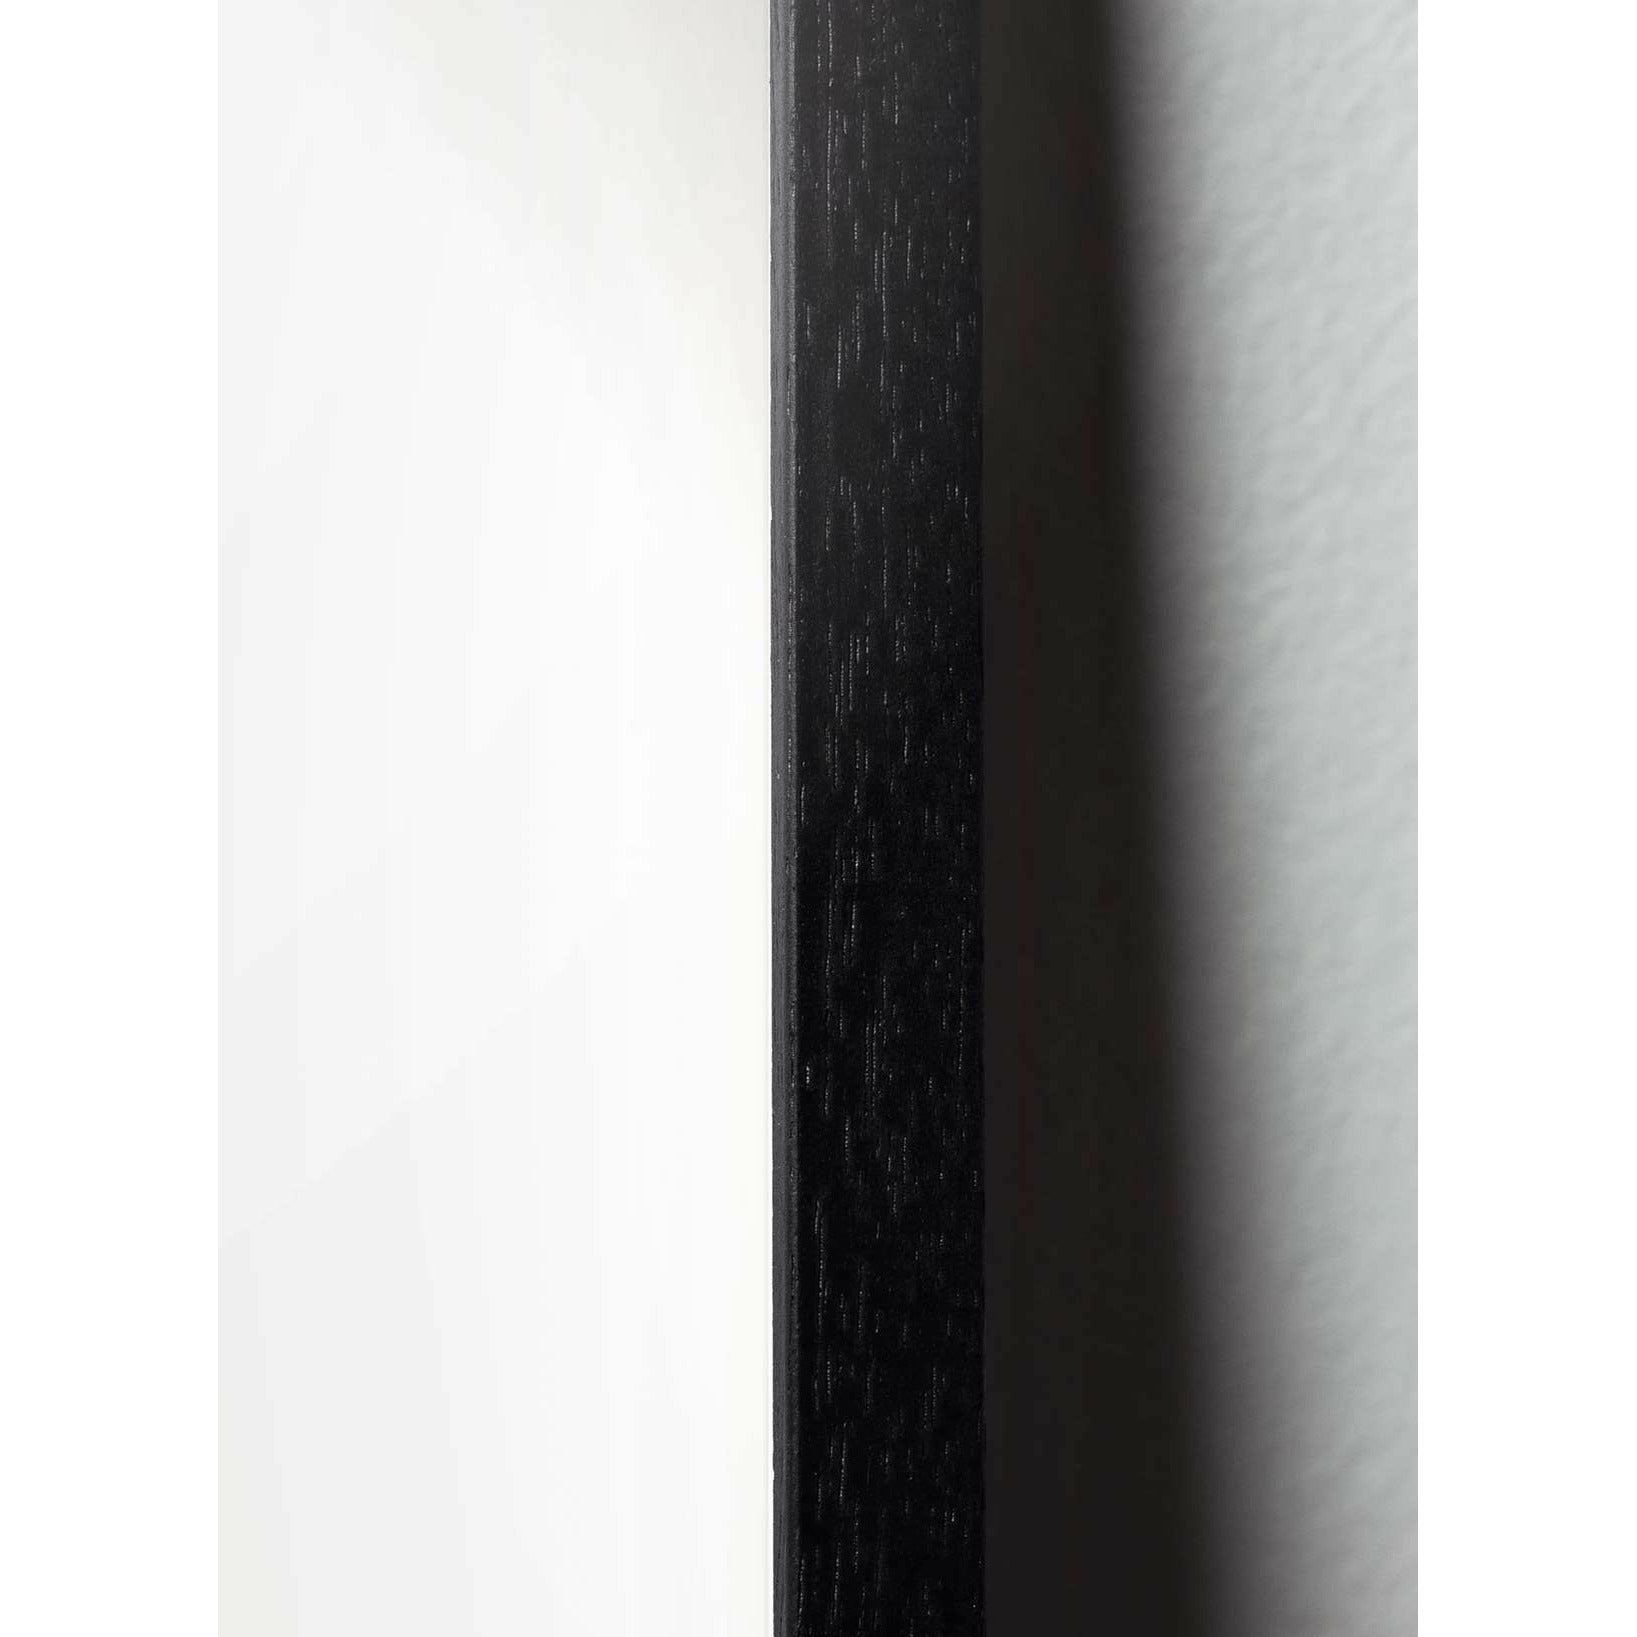 Pomysły plakat linii mrówek, rama w czarnym lakierowanym drewnie 70x100 cm, białe tło